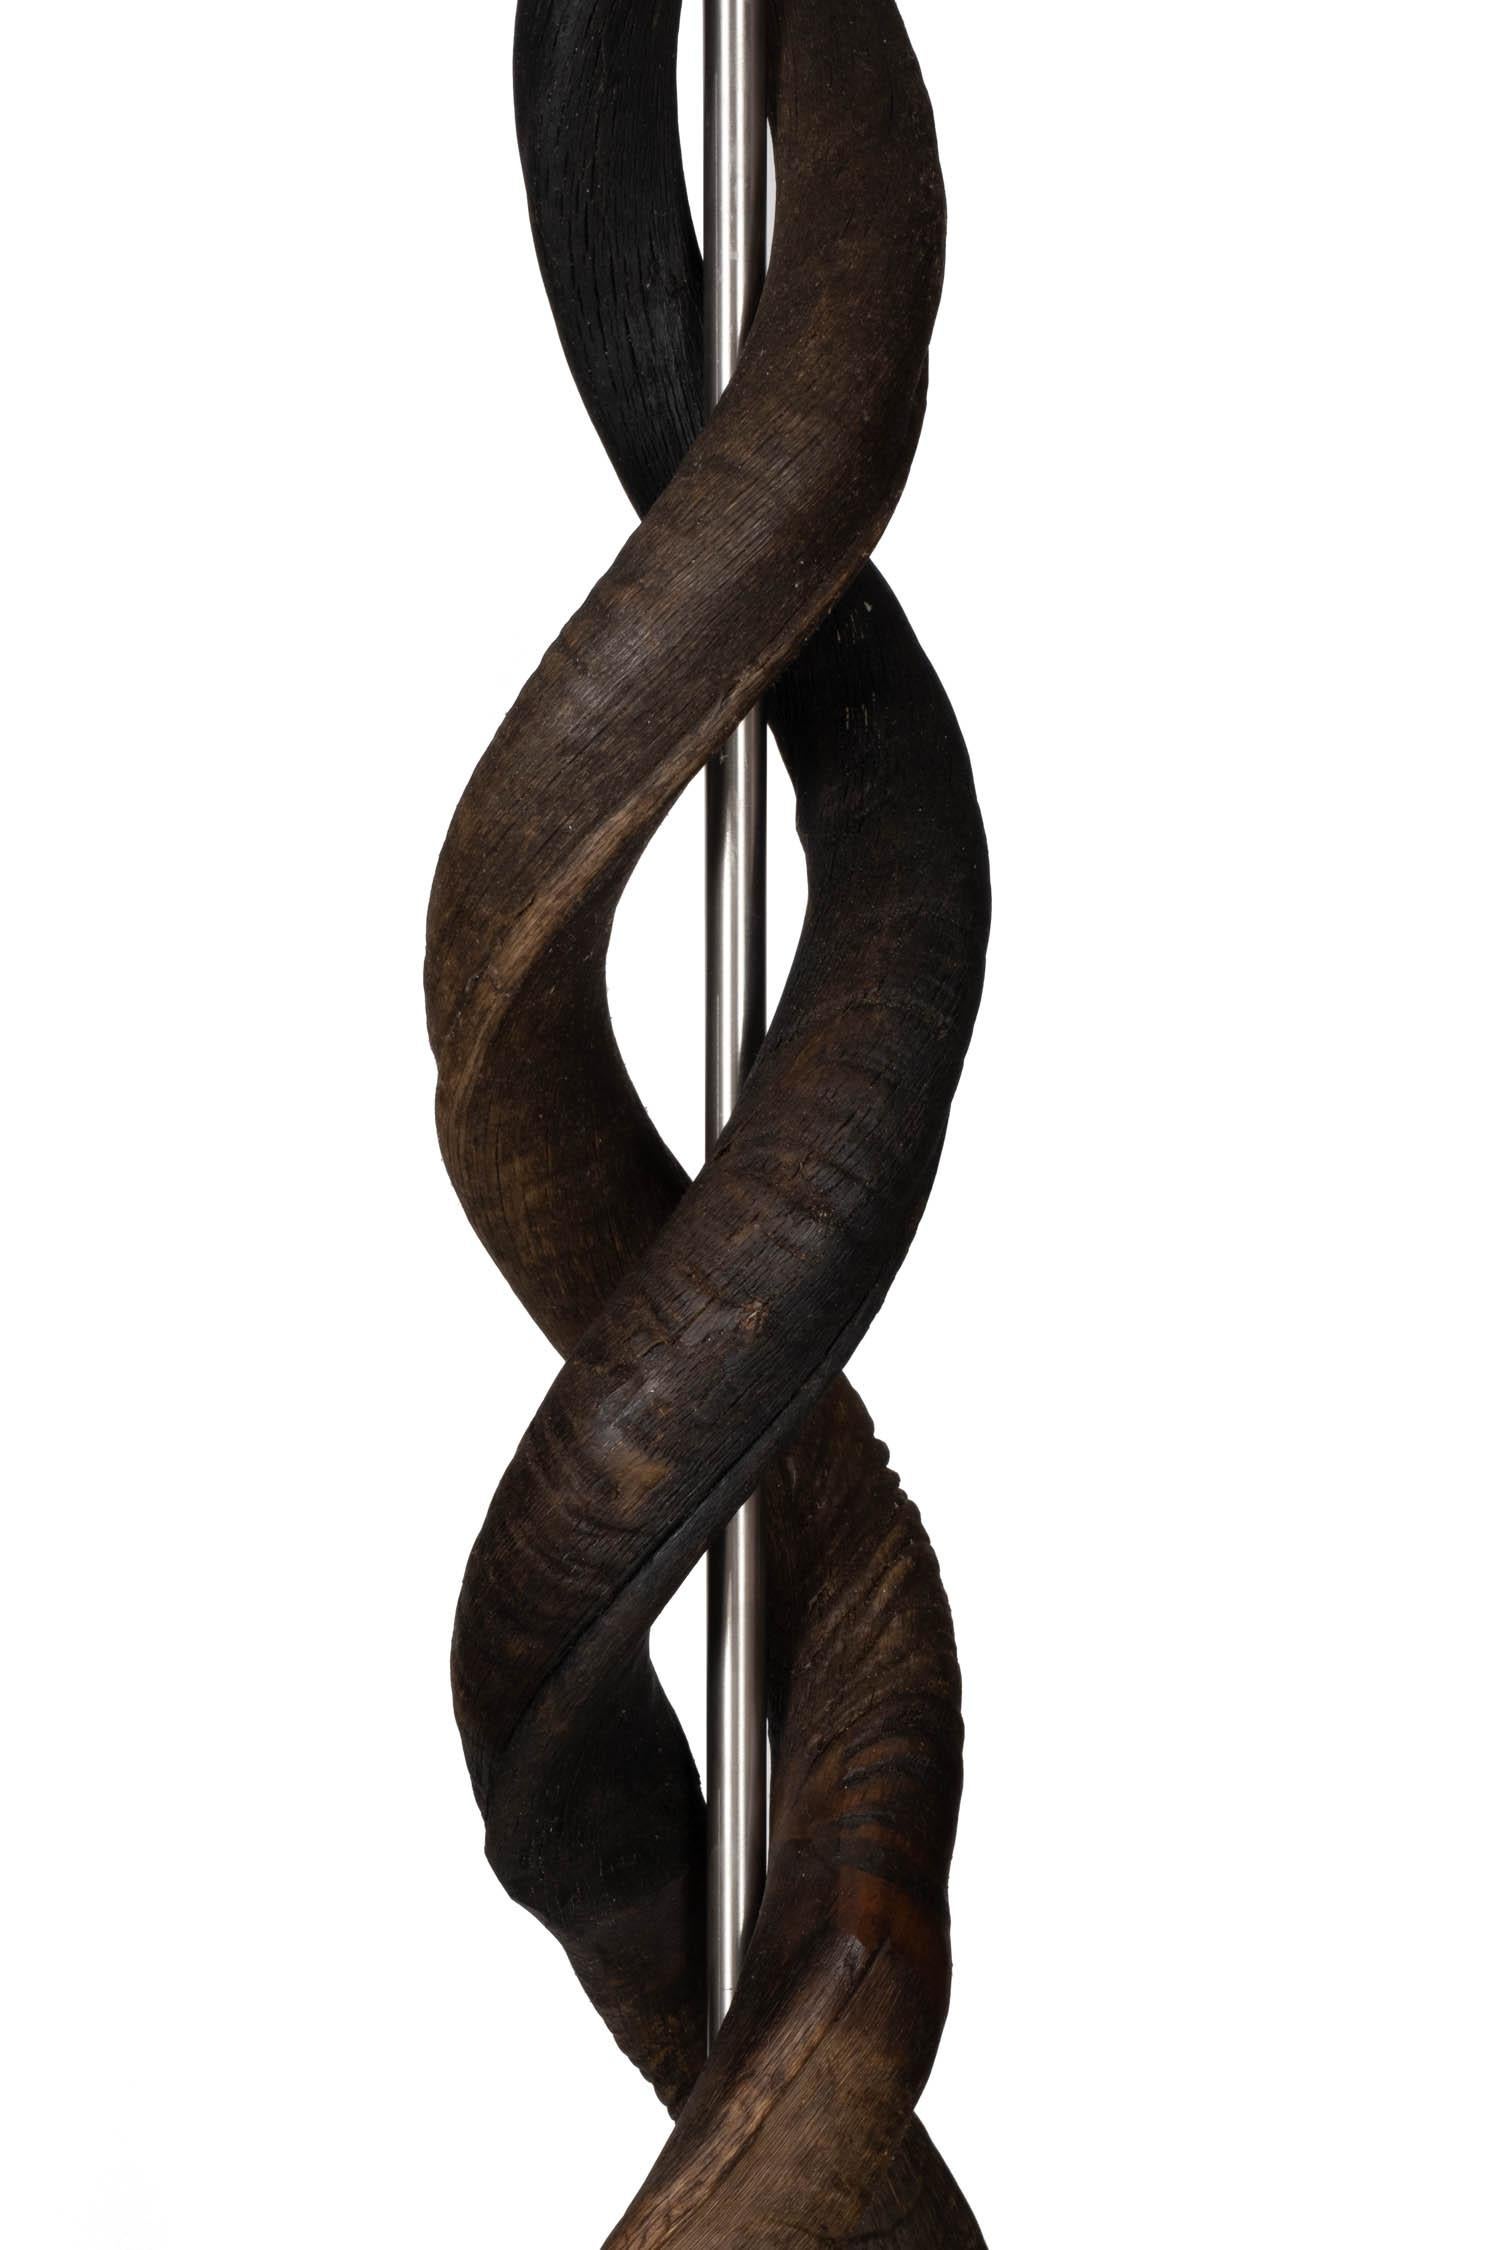 Fabriqué à la main en Afrique du Sud, ce lampadaire d'une élégance naturelle présente quatre cornes naturelles de koudou africain entrelacées qui semblent suspendues au-dessus d'une base en bois enveloppée d'une peau de gnou surpiquée. . Toutes les